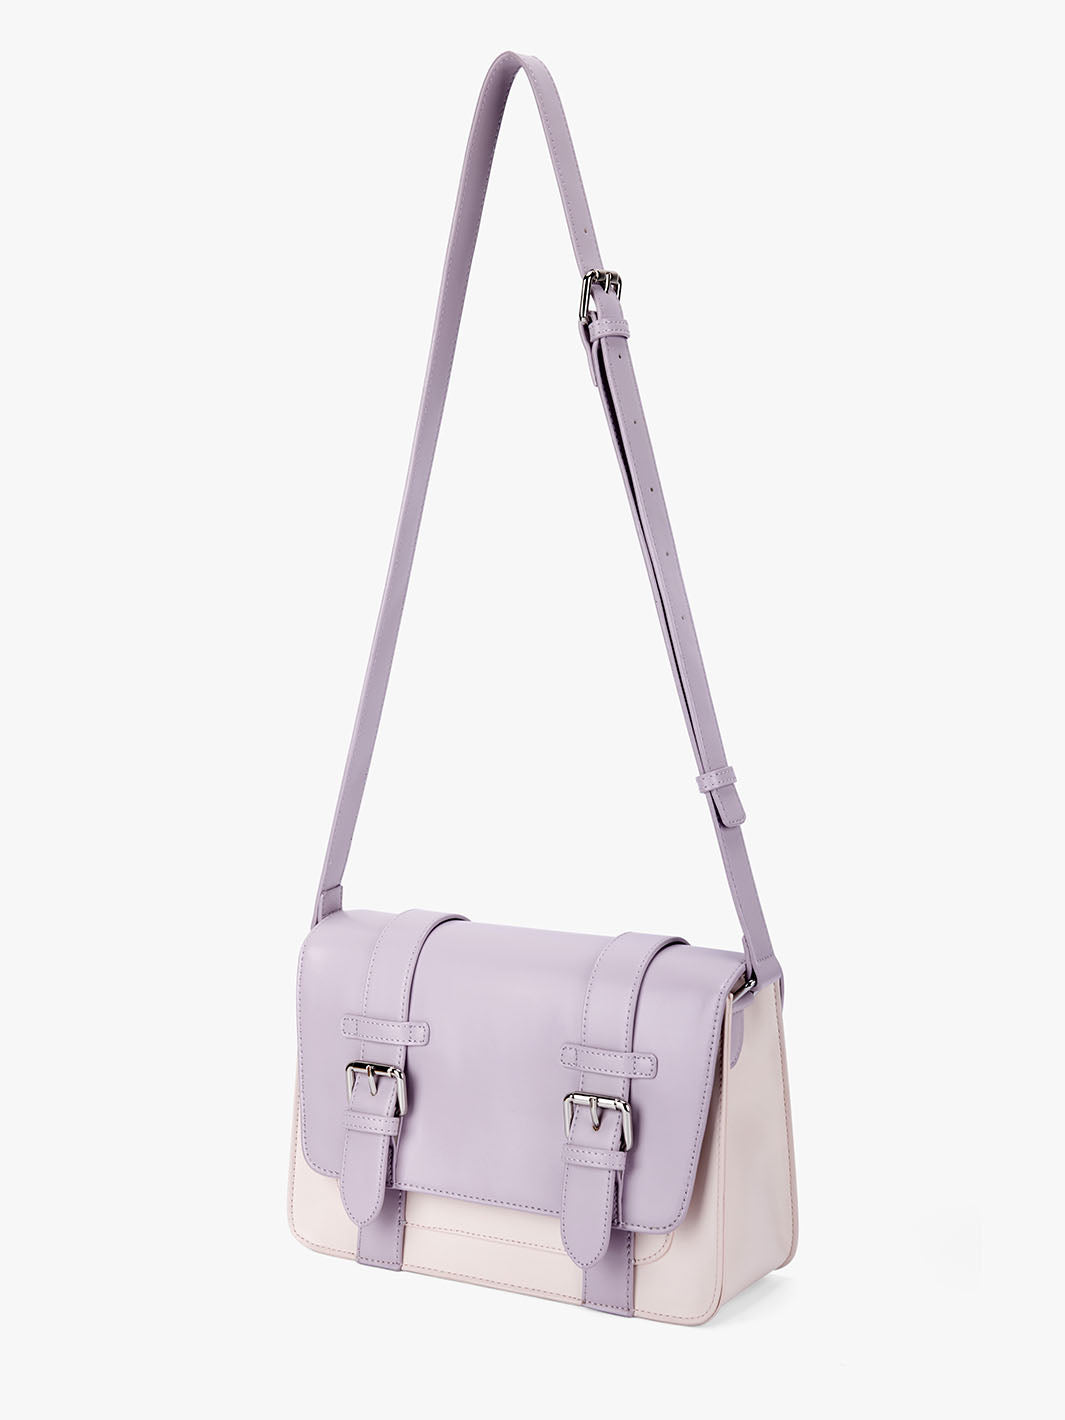 Jane Messenger Bag- Light Violet